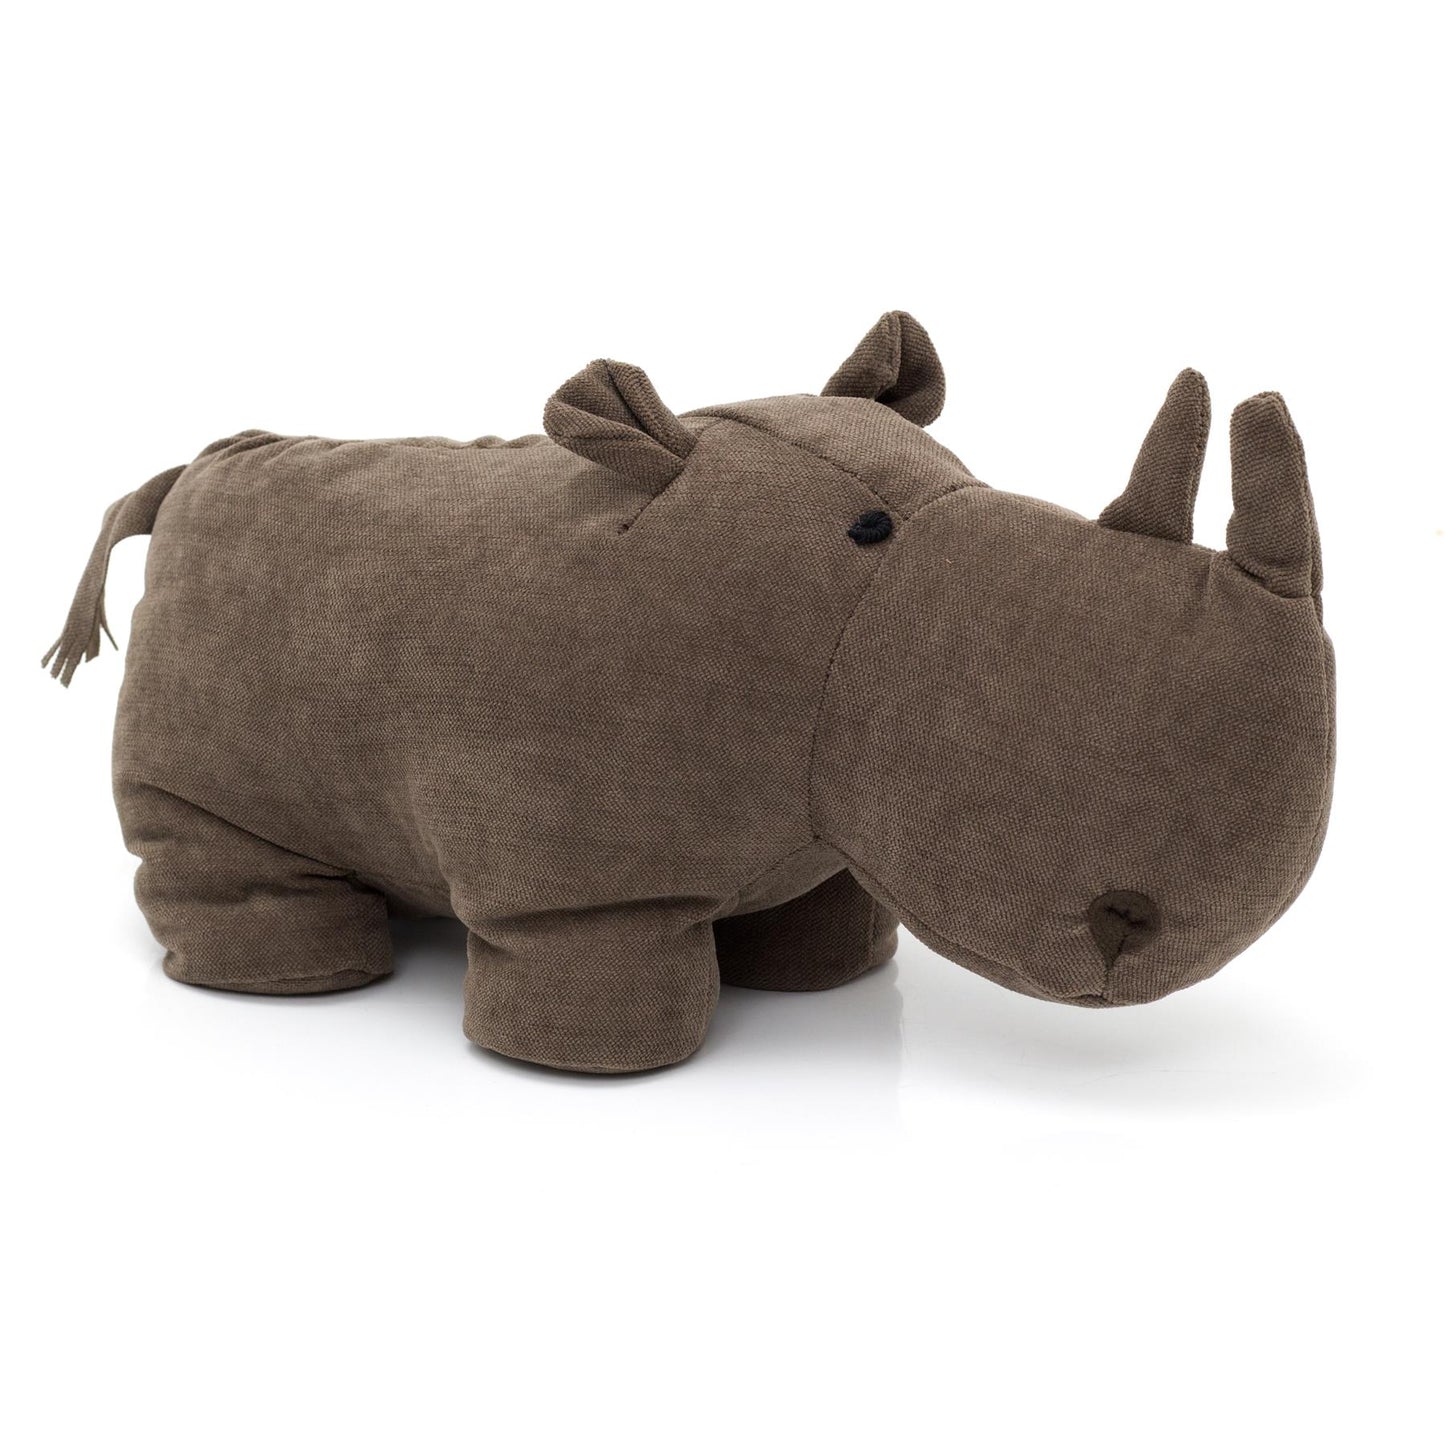 Adorable Chocolate Brown Rhinoceros Doorstop | Decorative Fabric Animal Door Stop | Novelty Rhino Wildlife Door Stopper